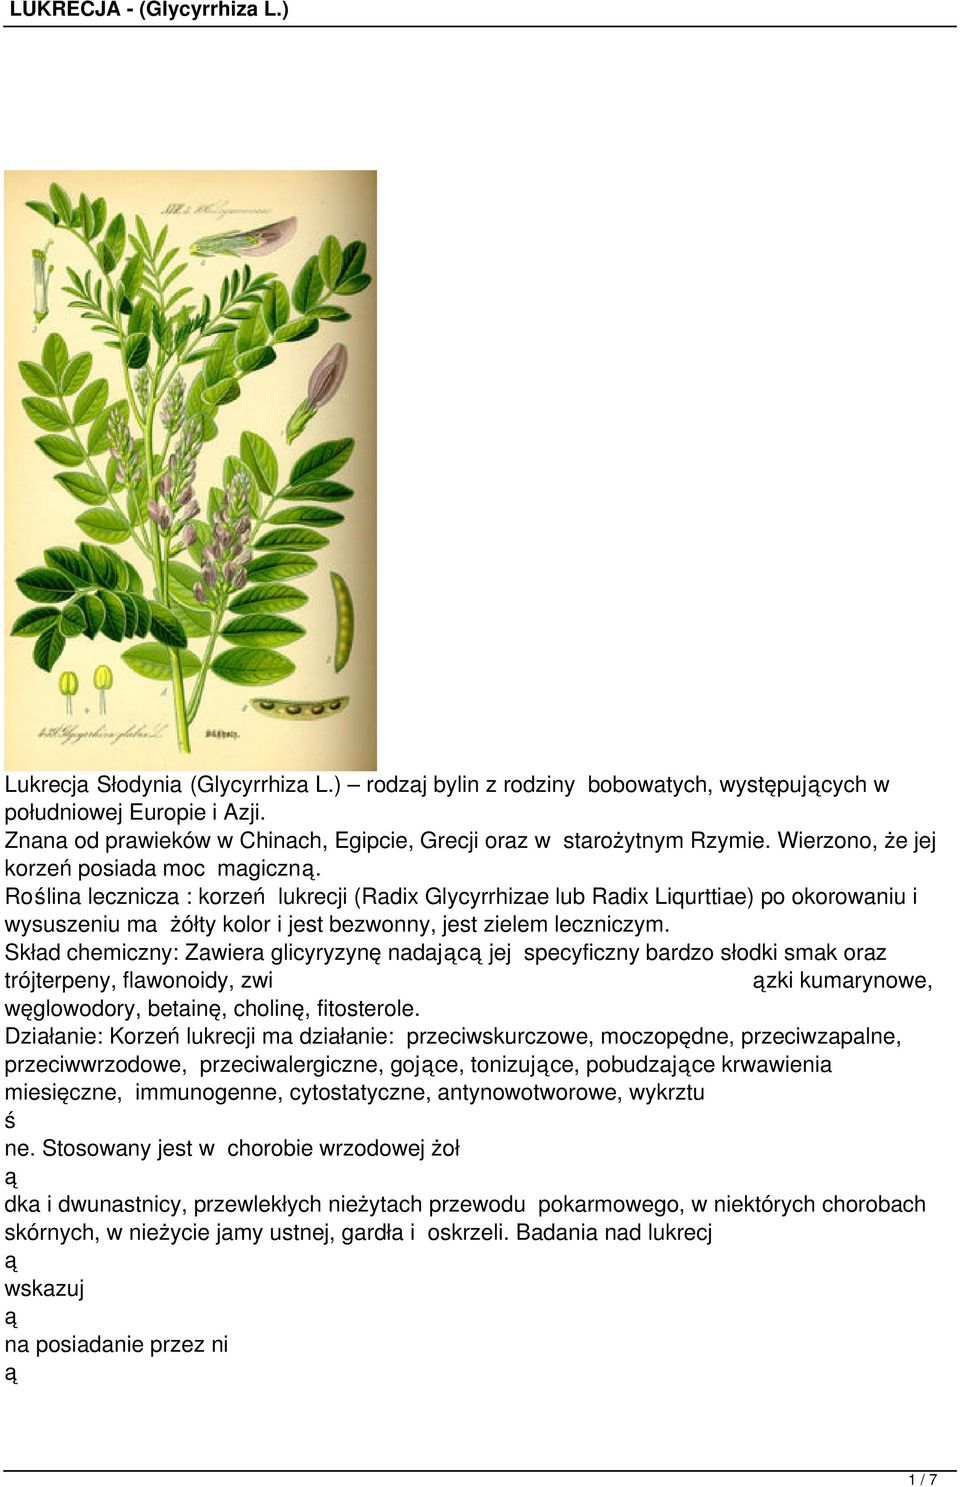 Rolina lecznicza : korzeń lukrecji (Radix Glycyrrhizae lub Radix Liqurttiae) po okorowaniu i wysuszeniu ma żółty kolor i jest bezwonny, jest zielem leczniczym.